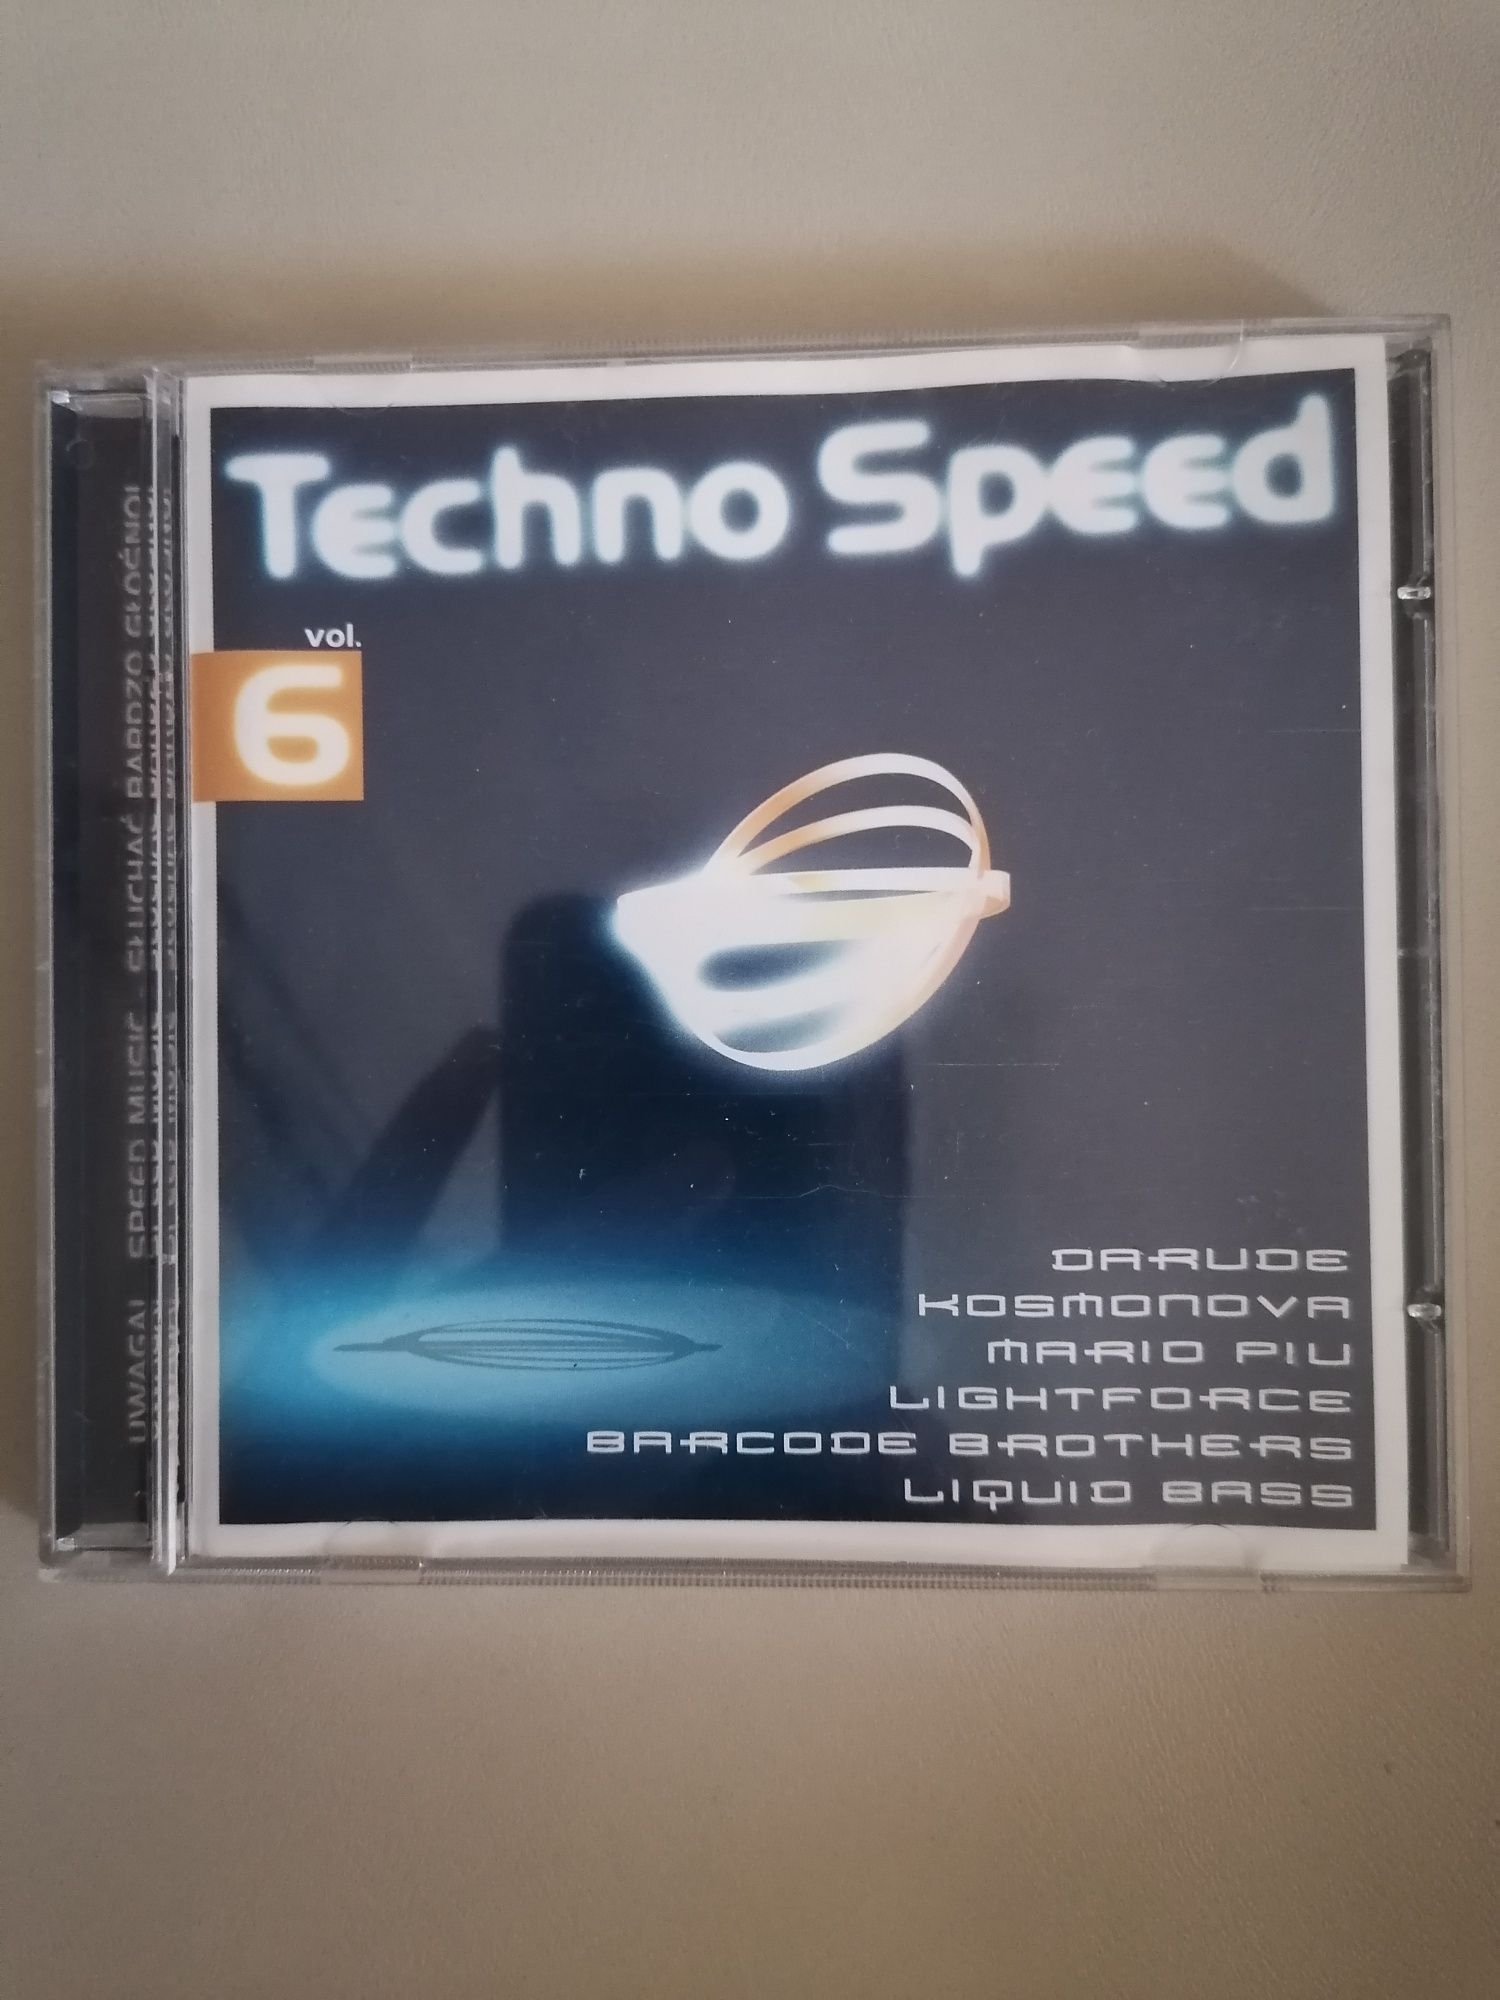 Techno Speed 6 oryginalna płyta CD